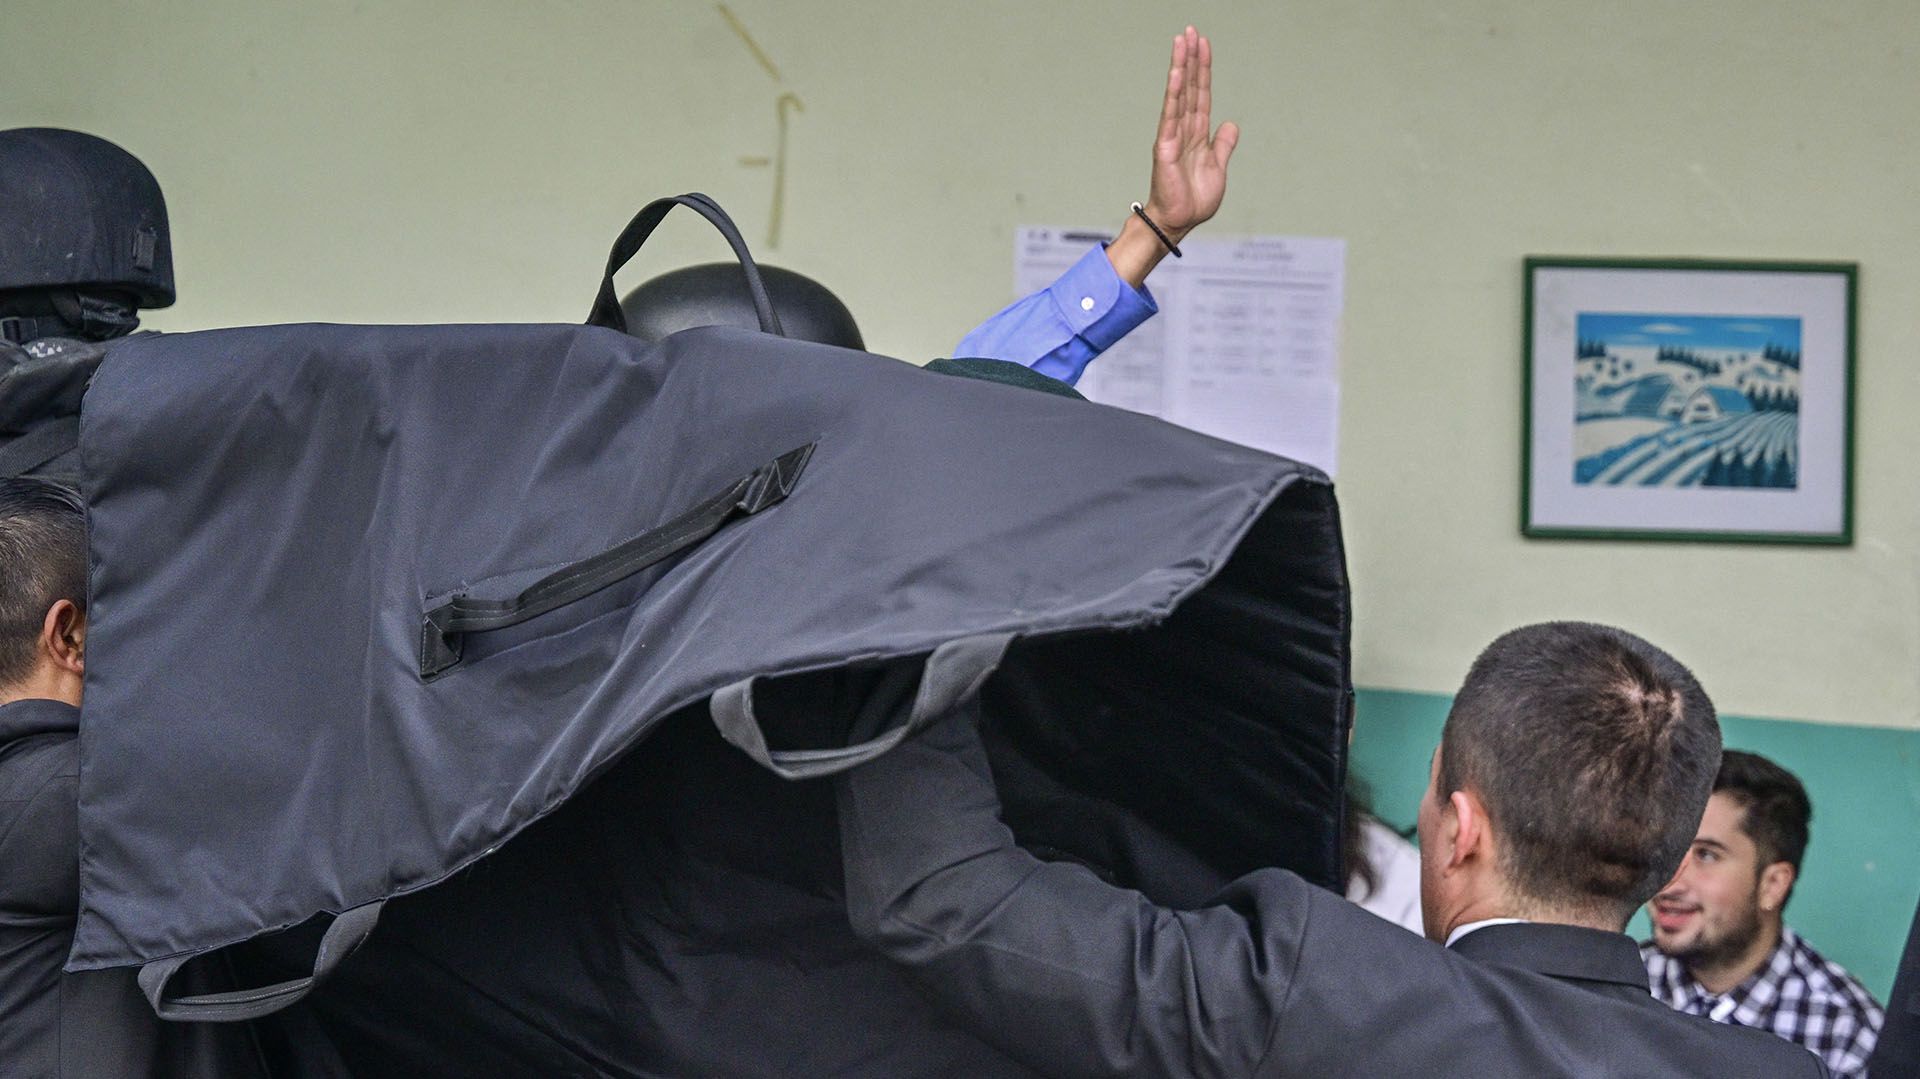 El candidato fue cubierto por un escudo protector cuando estaba en la mesa de votación. (MARTIN BERNETTI / AFP)